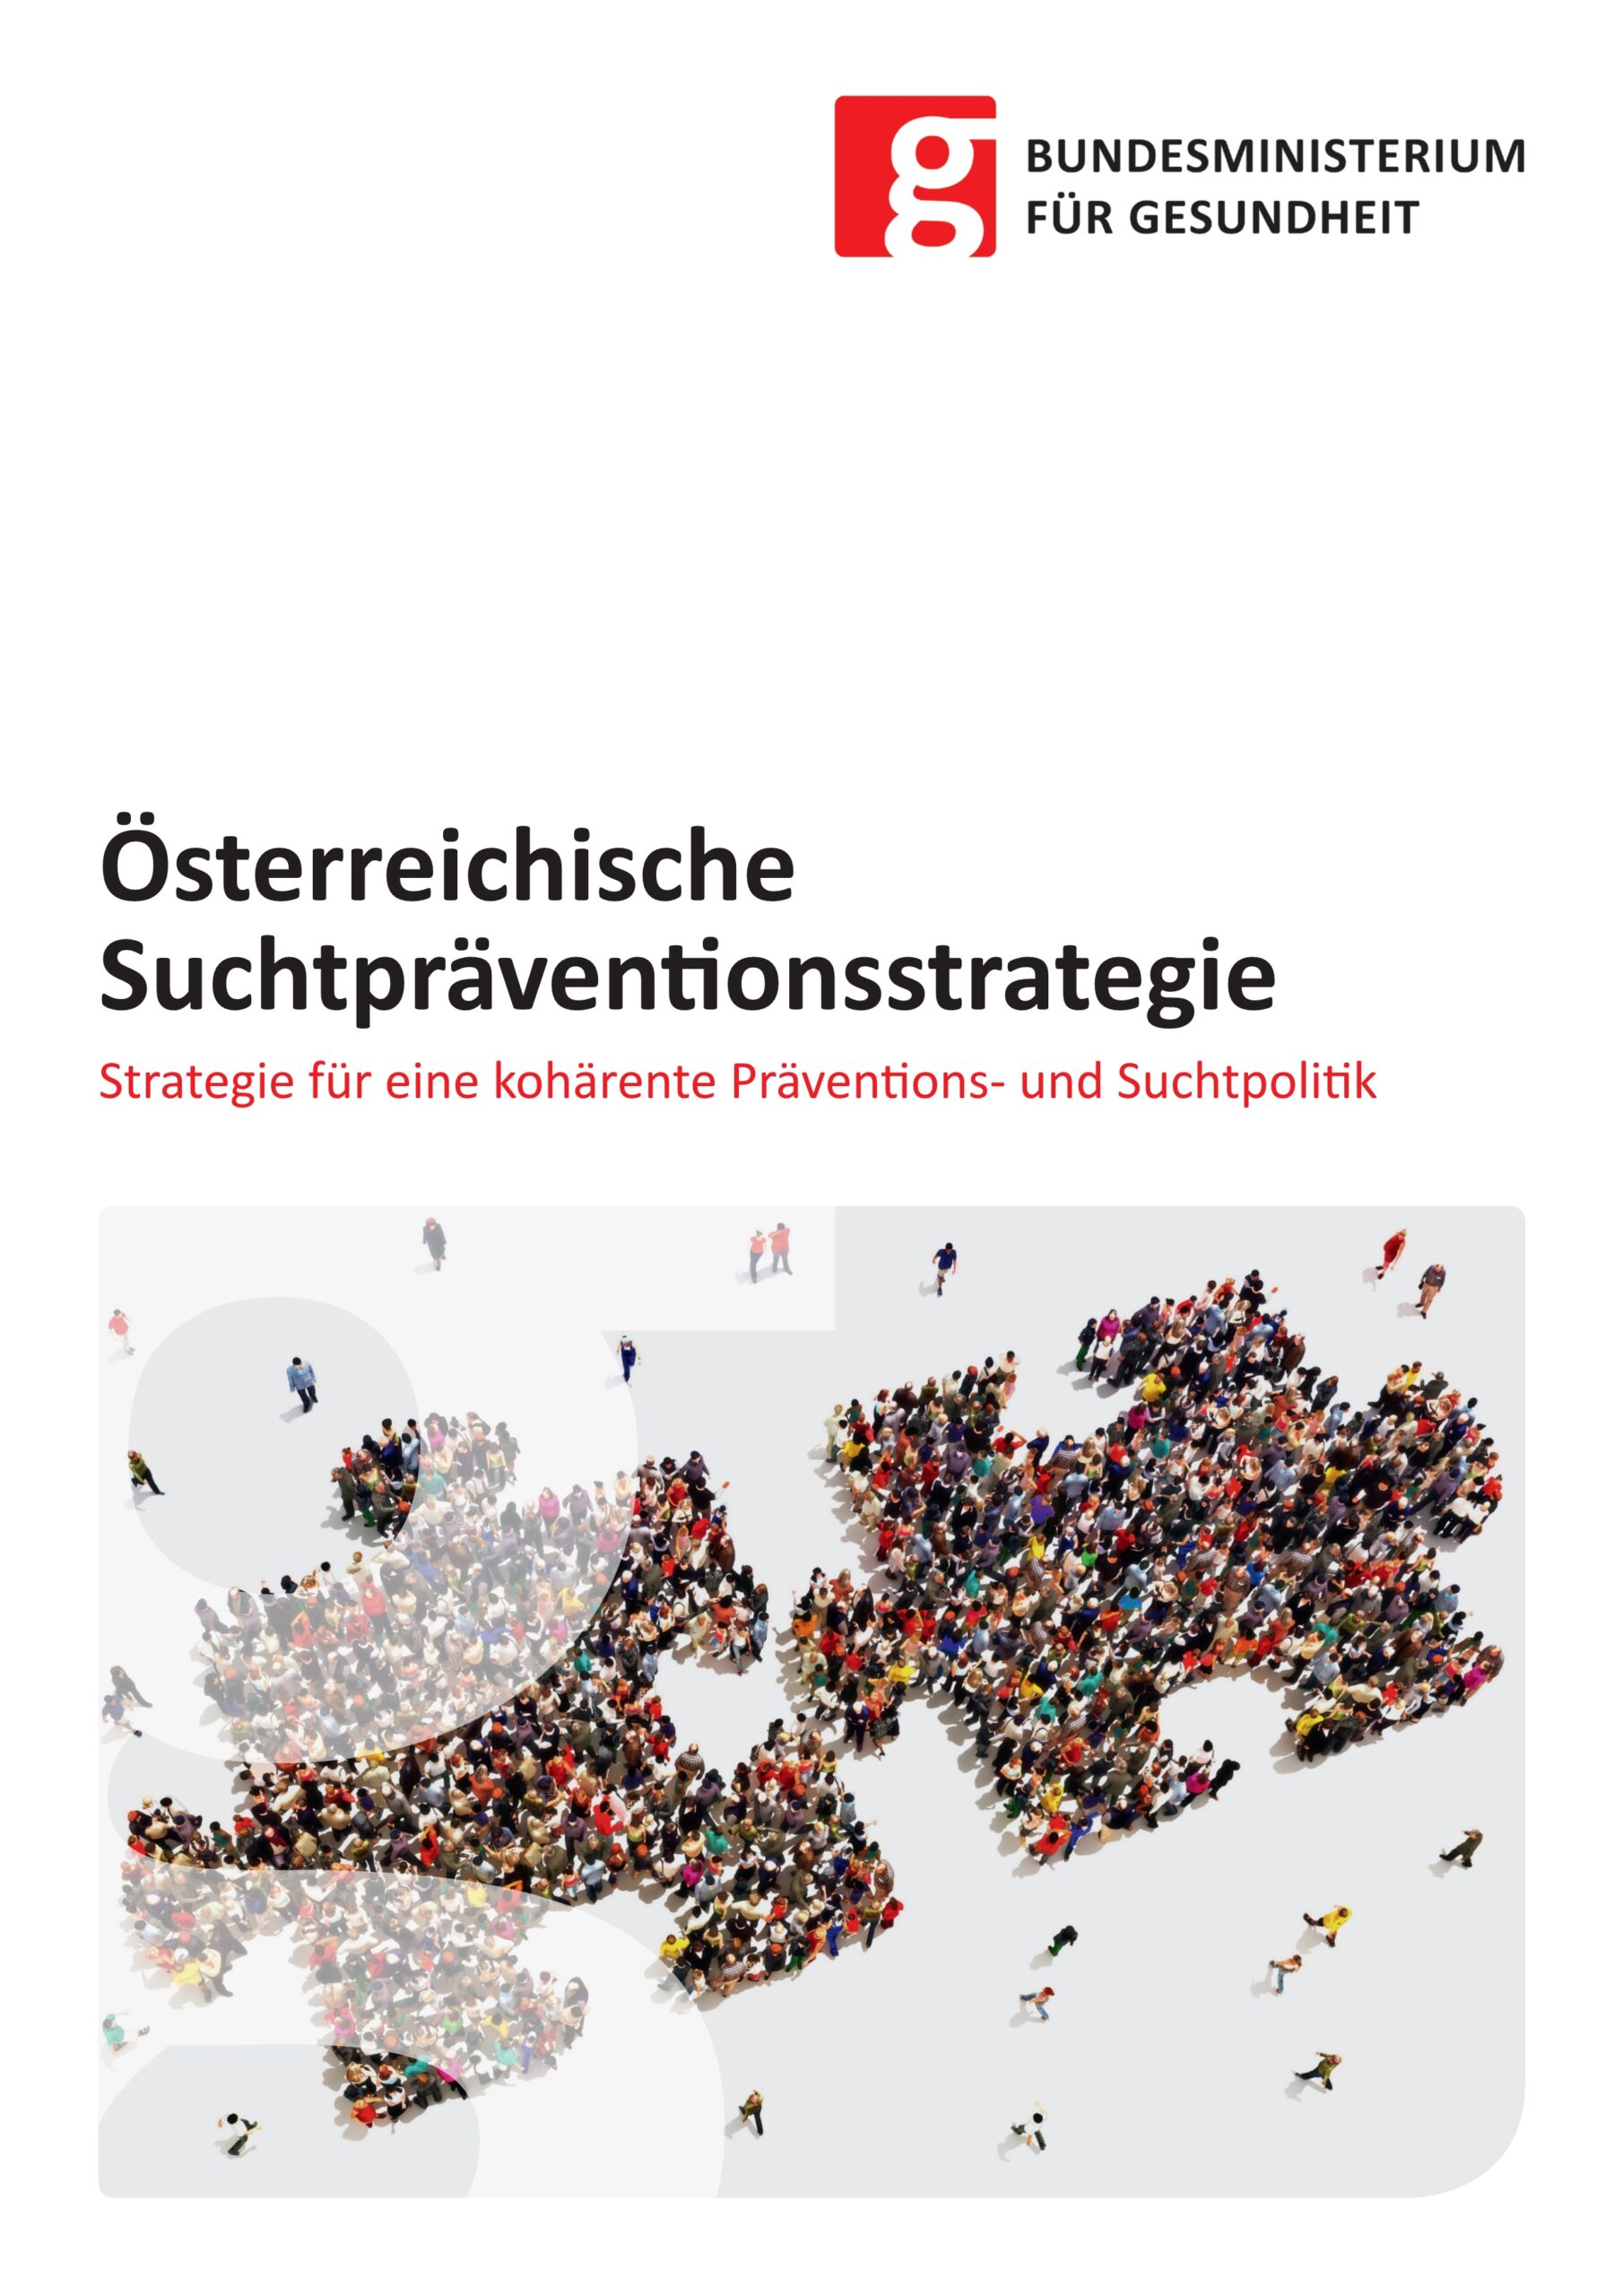 Österreichische Suchtpräventionsstrategie